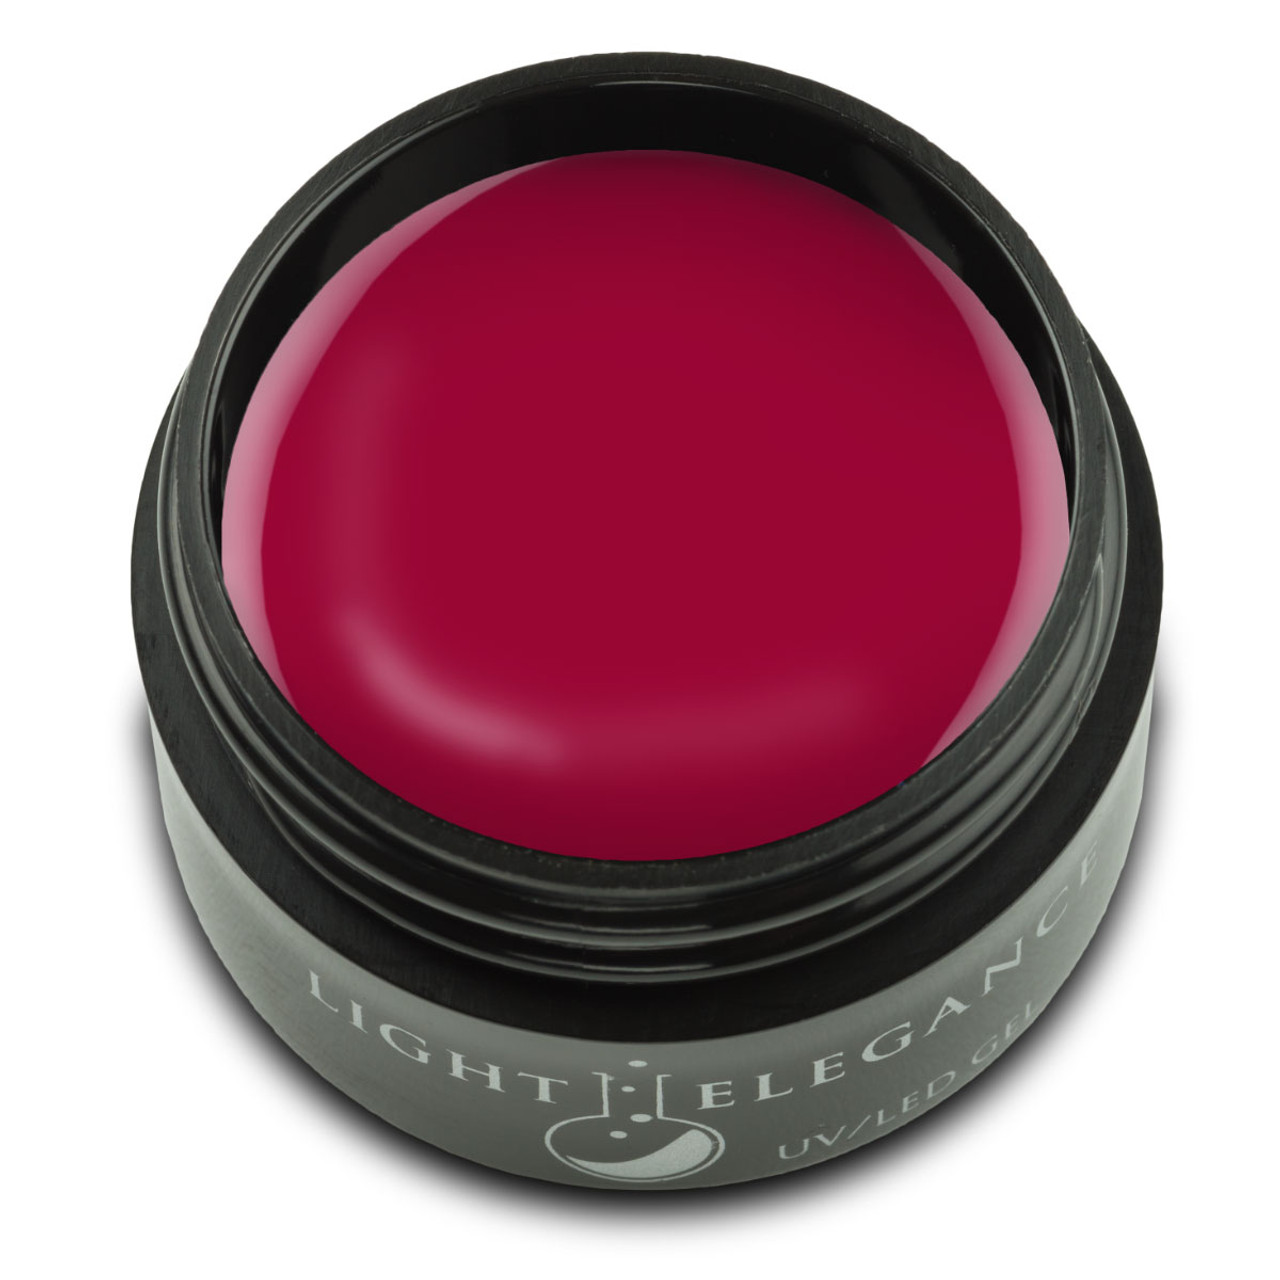 Light Elegance UV/LED Lipstick & Letters Color Gel - .57 oz (17 ml)